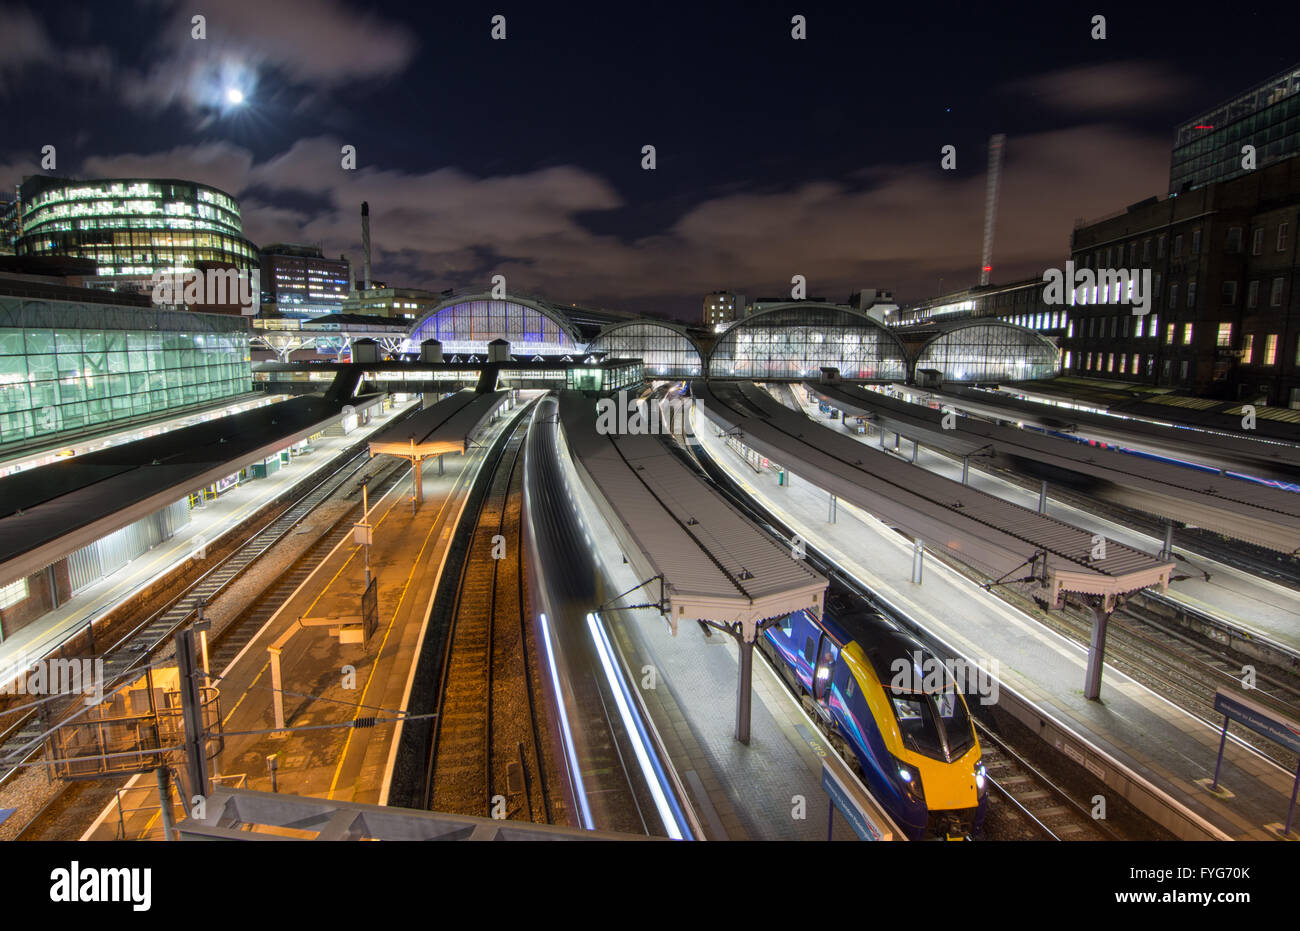 London, England - 26. Januar 2016: First Great Western Intercity-Züge auf den Plattformen von London Paddington Station in der Nacht. Stockfoto